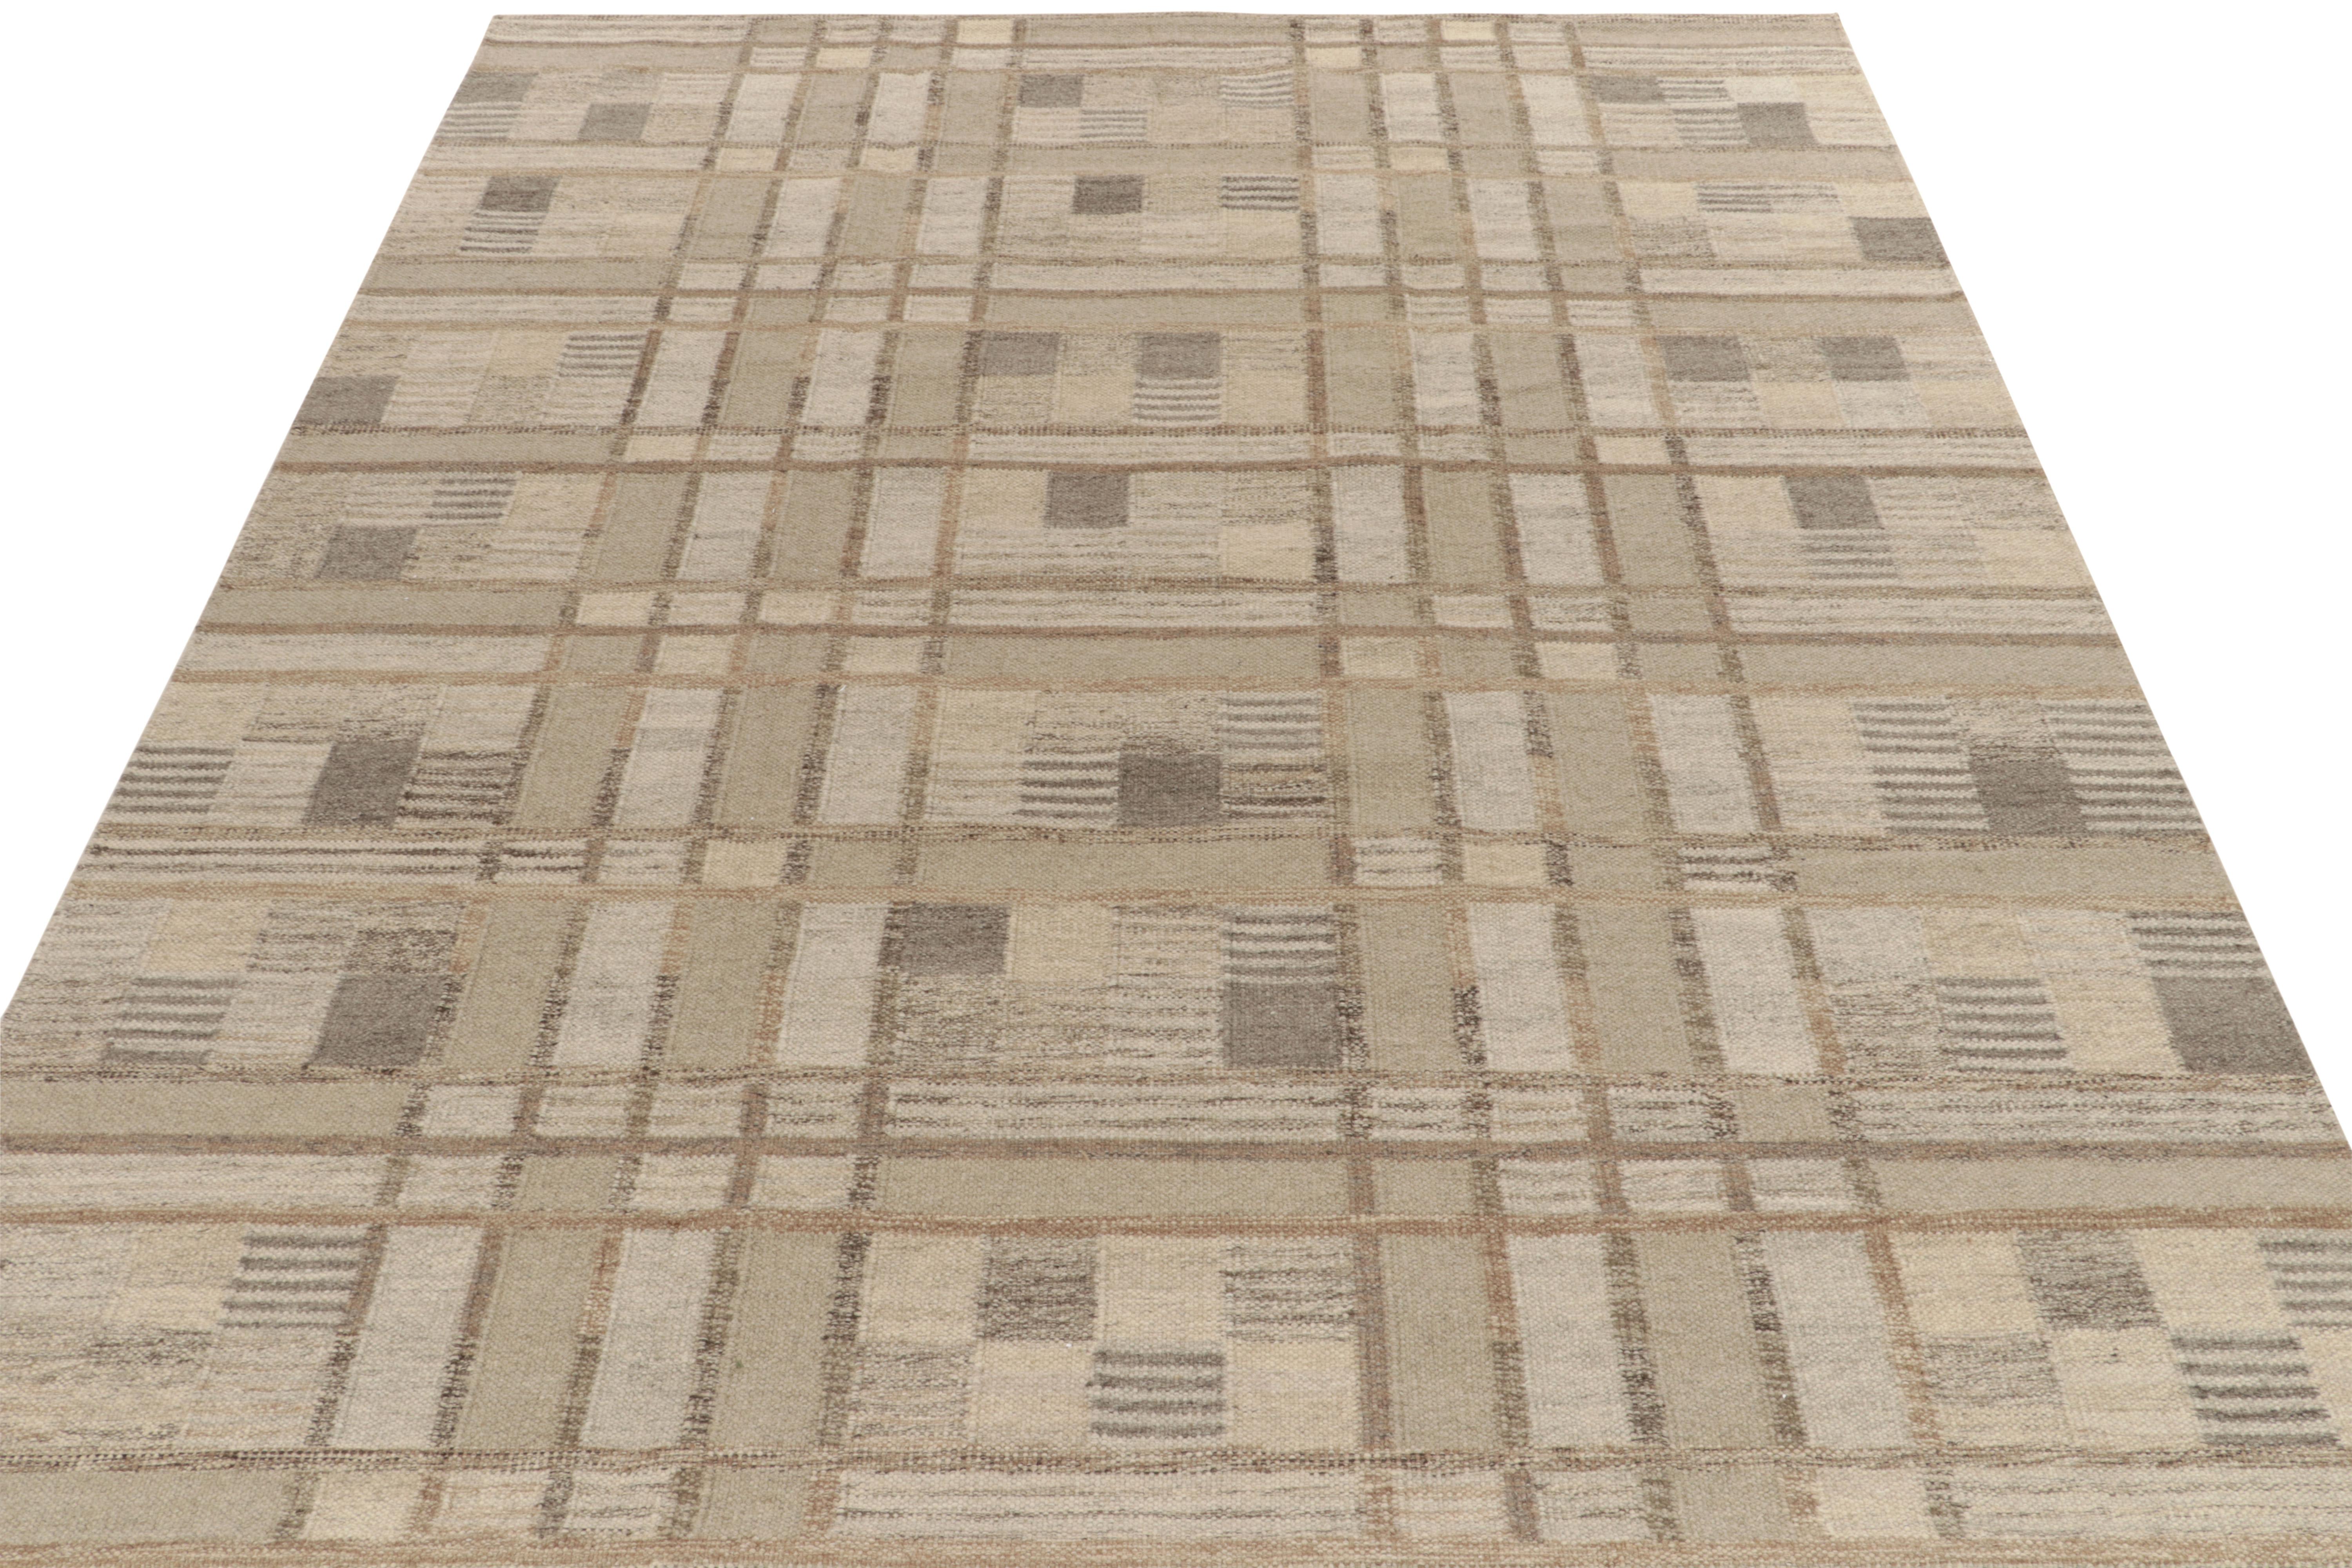 Ein 10x12 Kelim-Teppich im schwedischen Stil aus unserem preisgekrönten skandinavischen Flachgewebe-Sortiment. Der Teppich zeigt ein raffiniertes Spiel von Beige-Braun mit Grau-Blau für eine kühle Stimmung, die sich geschickt mit der Geometrie für